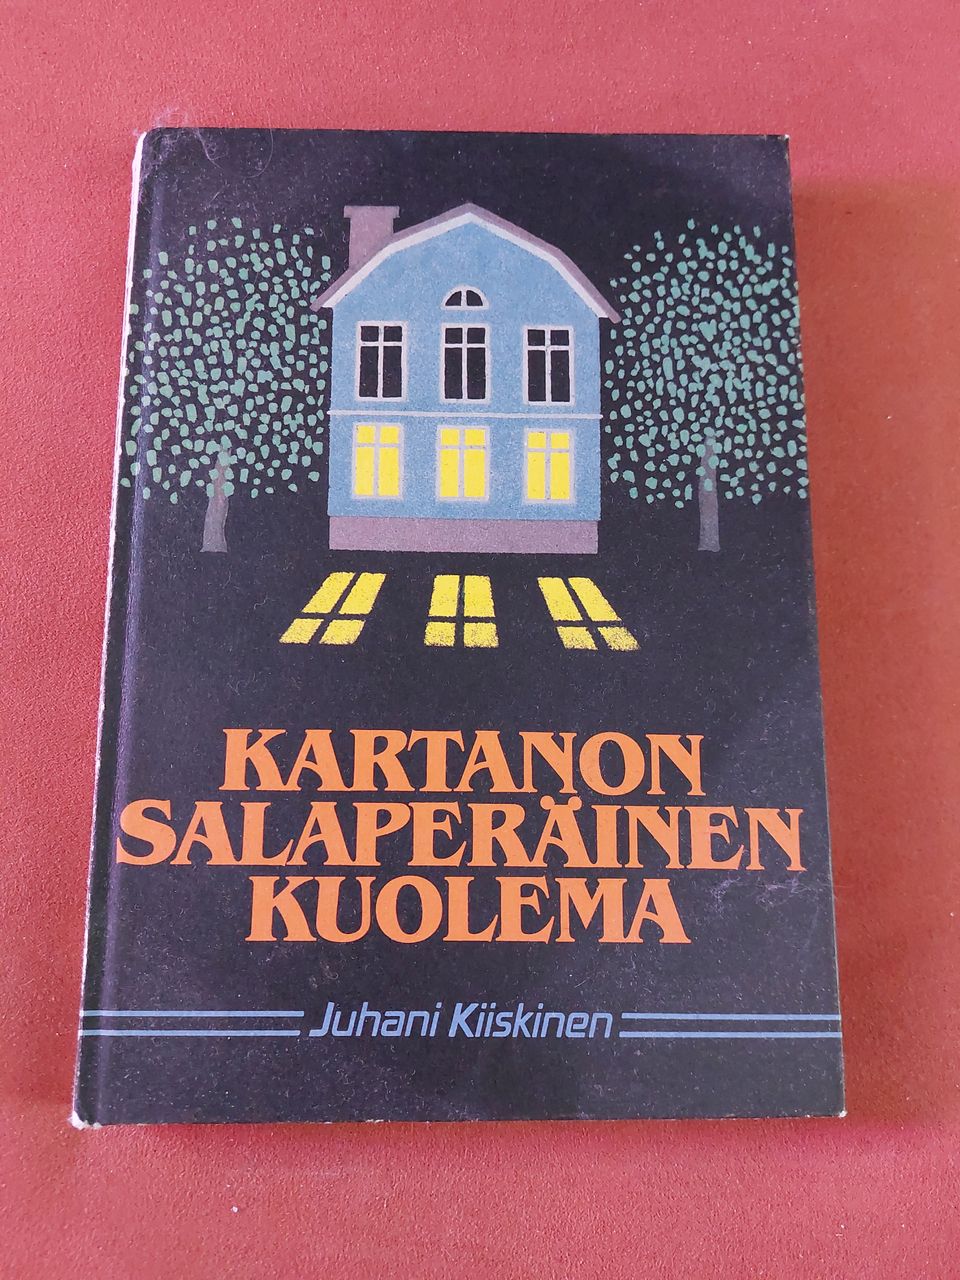 Juhani Kiiskinen, Kartanon salaperäinen kuolema